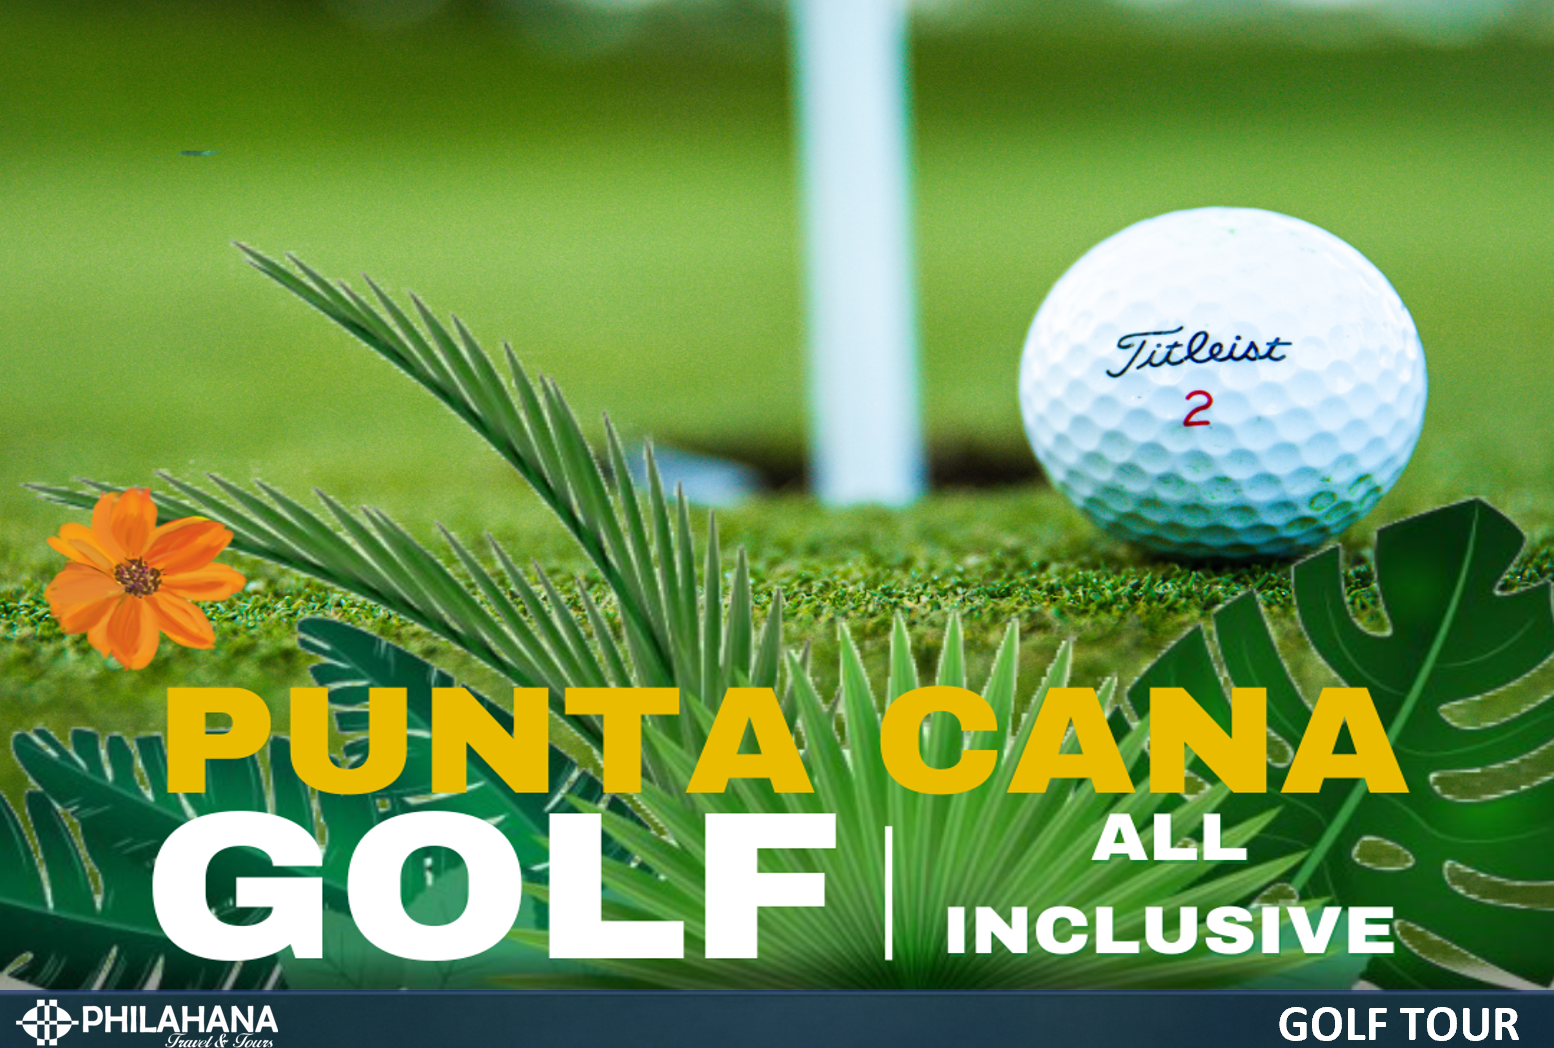 푼타카나 골프 투어- All inclusive